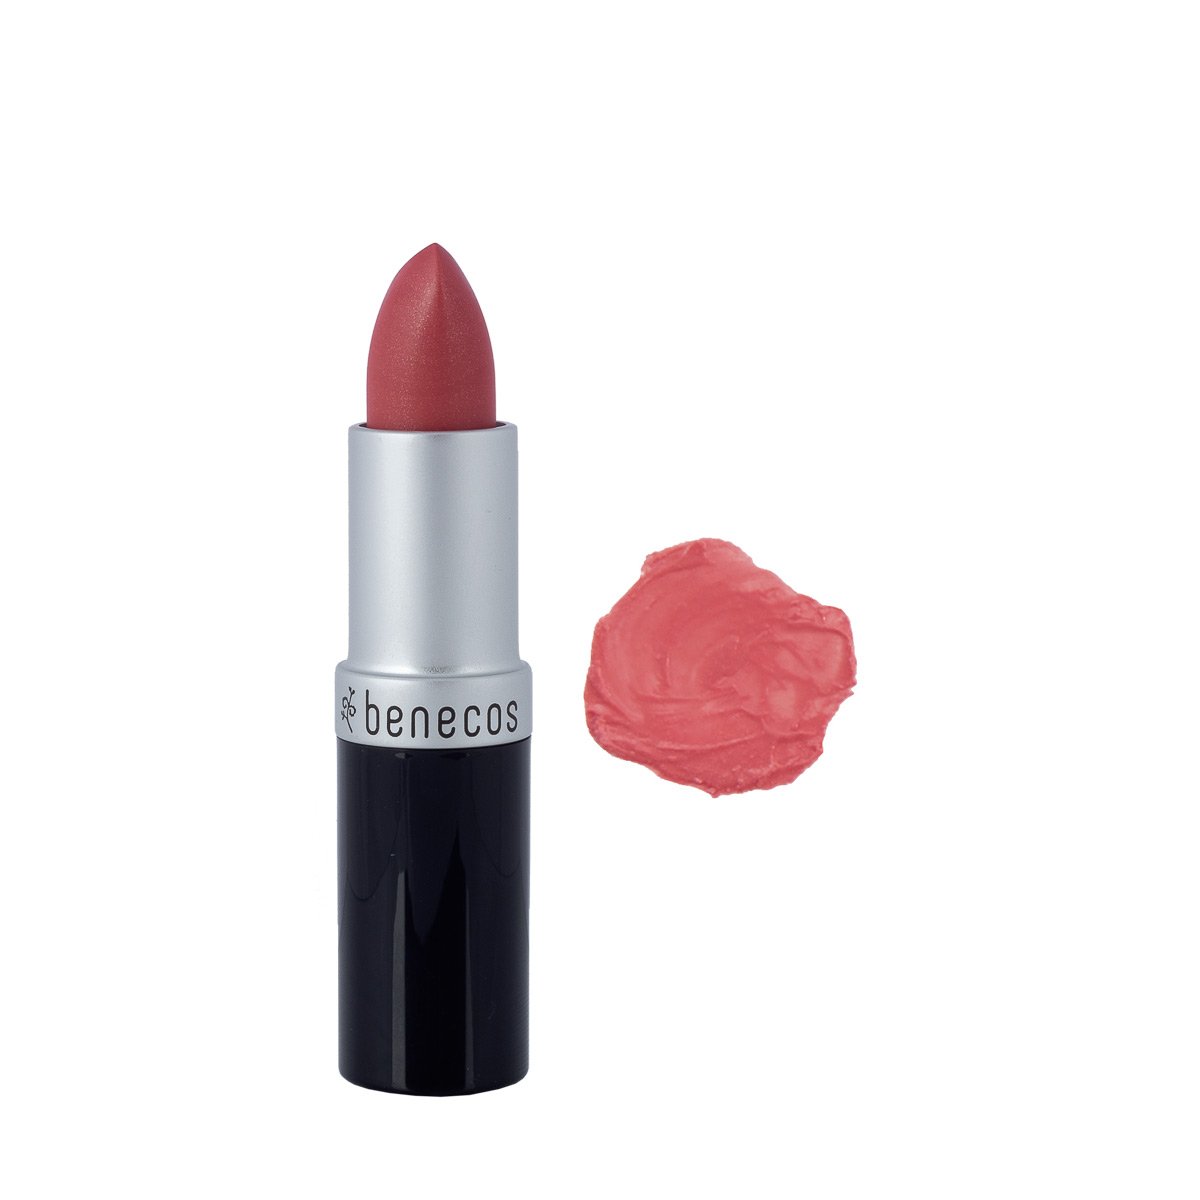 Benecos Natural Lip Stick - Peach 4.5g